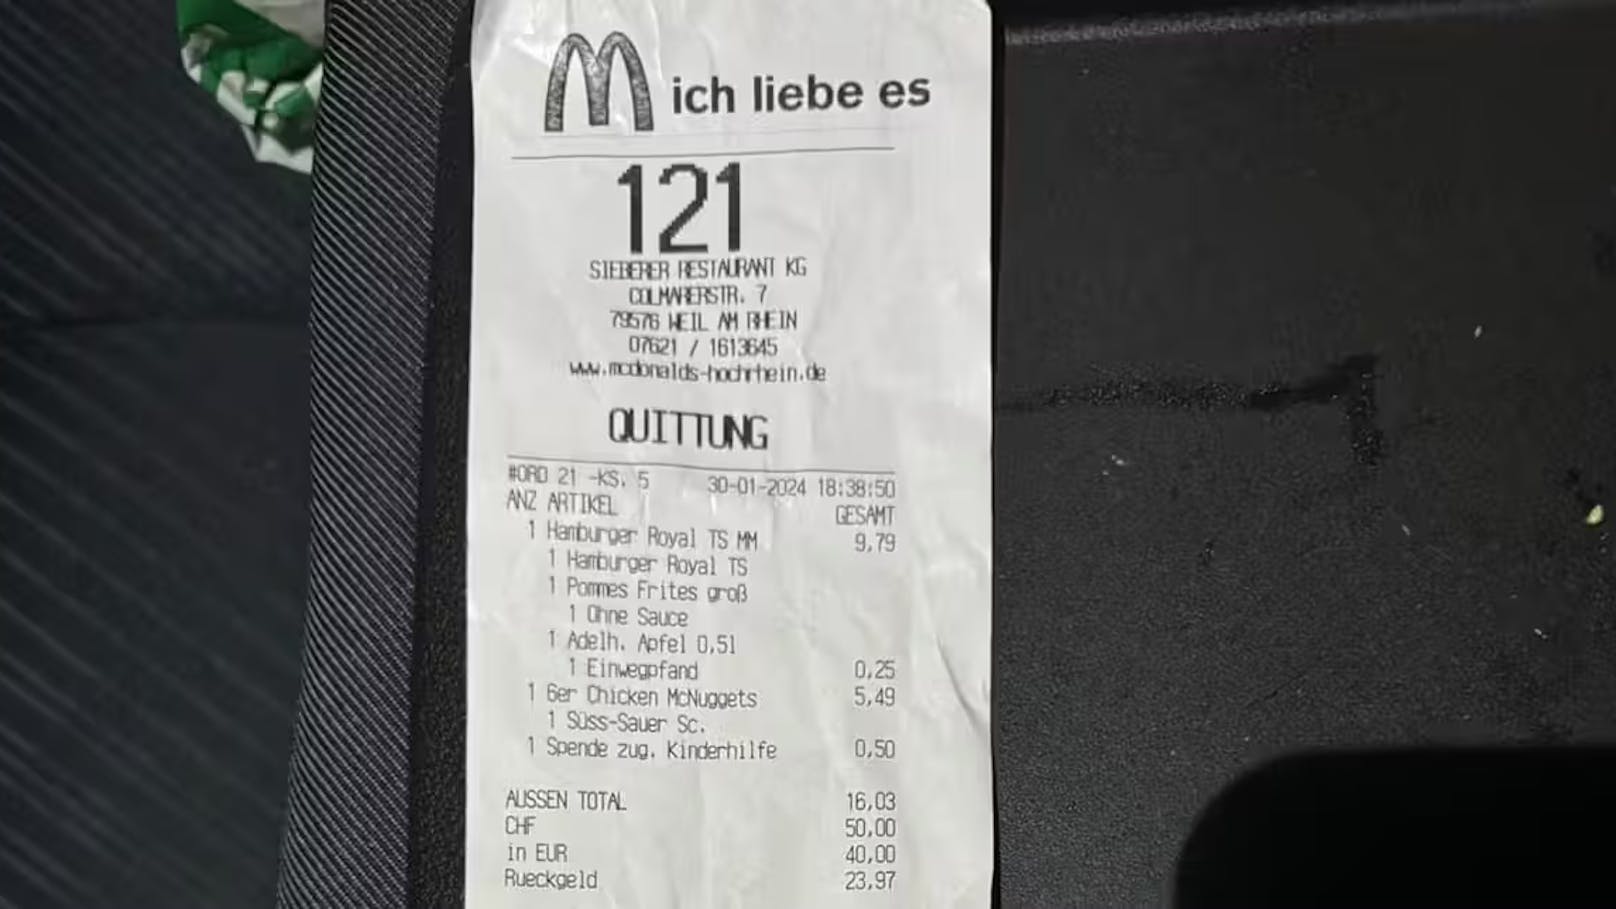 <strong>06.02.2024: "Ich dachte zuerst, der Kassierer hätte sich vertan".</strong> Ein Mann bezahlte bei McDonald's in Weil am Rhein (D) mit Franken, weil er seine Karte nicht dabeihatte. <a rel="nofollow" data-li-document-ref="120017656" href="https://www.heute.at/s/ich-dachte-zuerst-der-kassierer-haette-sich-vertan-120017656">Der Wechselkurs verdarb ihm den Appetit &gt;&gt;&gt;</a>